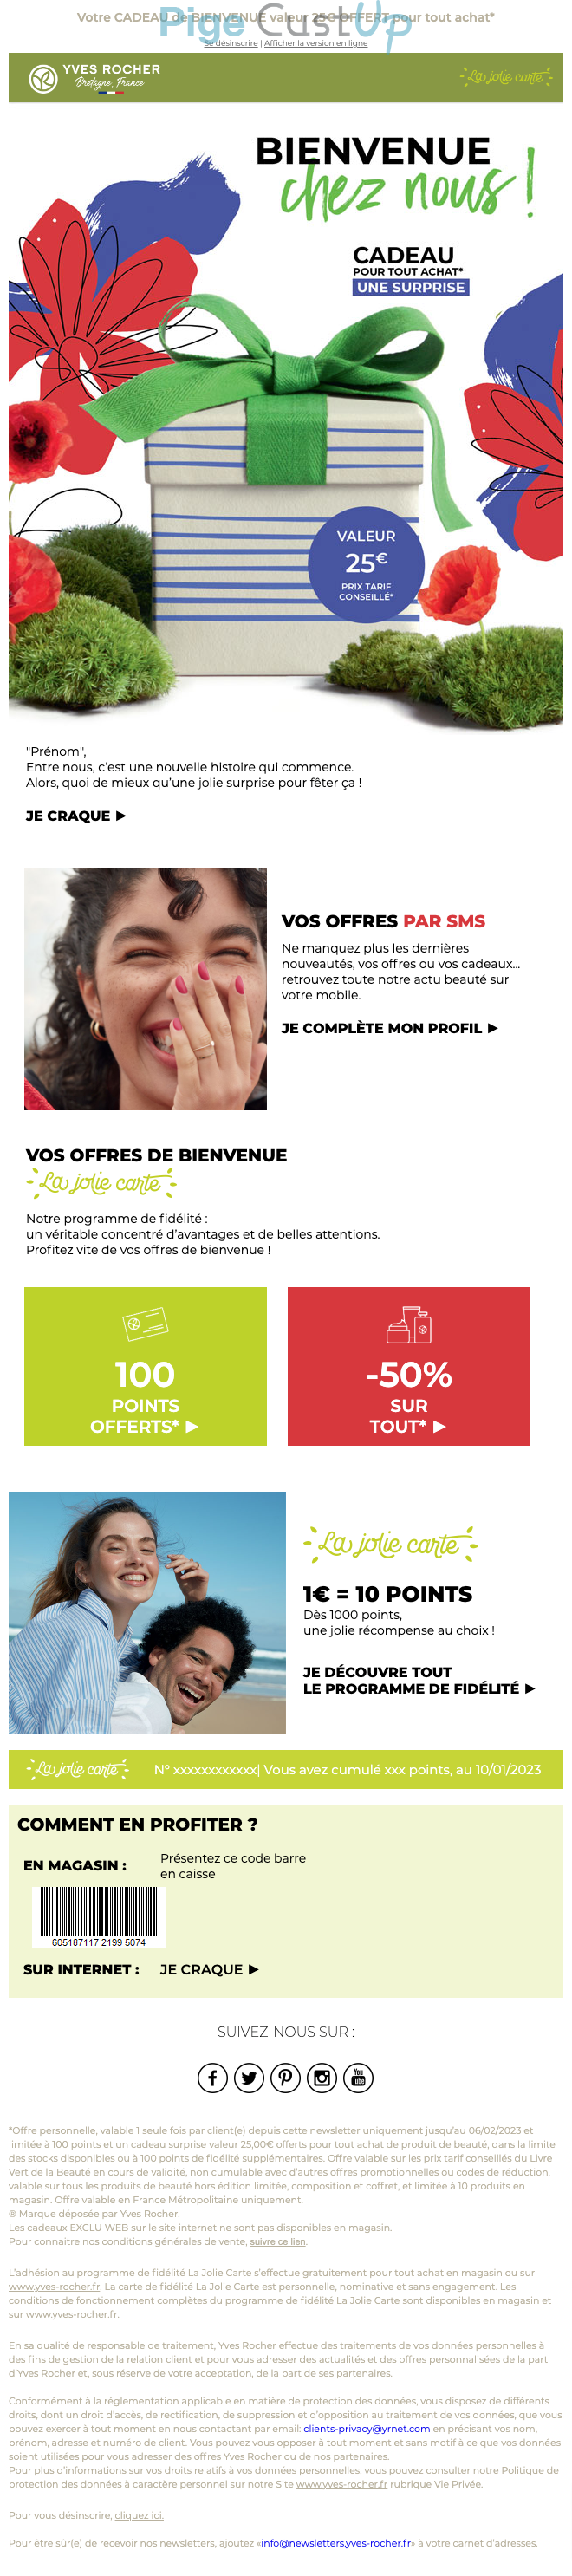 Exemple de Type de media  e-mailing - Yves Rocher - Marketing relationnel - Bienvenue - Welcome - Marketing Acquisition - Gratuit - Cadeau